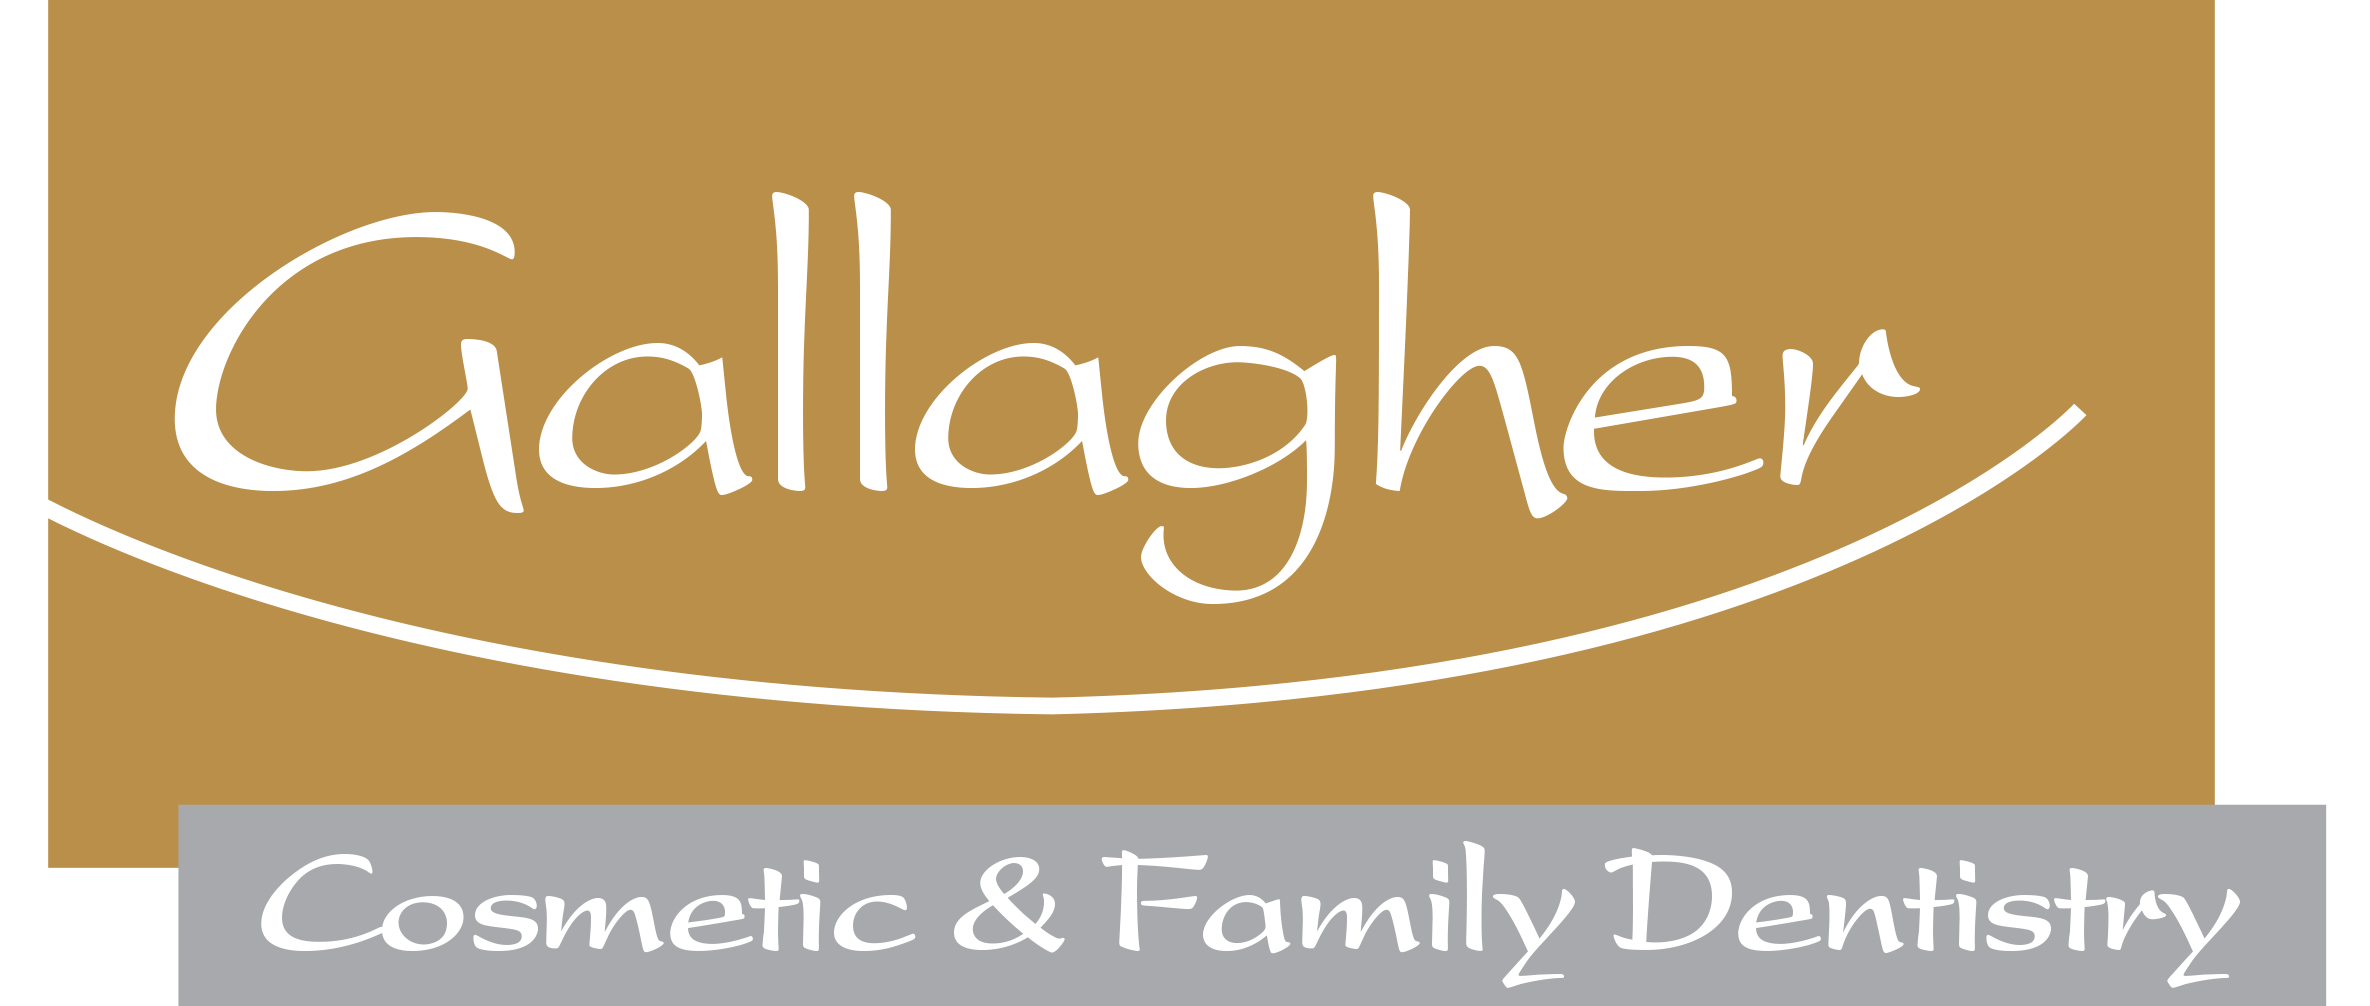 Gallagher Logo - TxCos Logo Crop - Gallagher Cosmetic & Family Dentistry